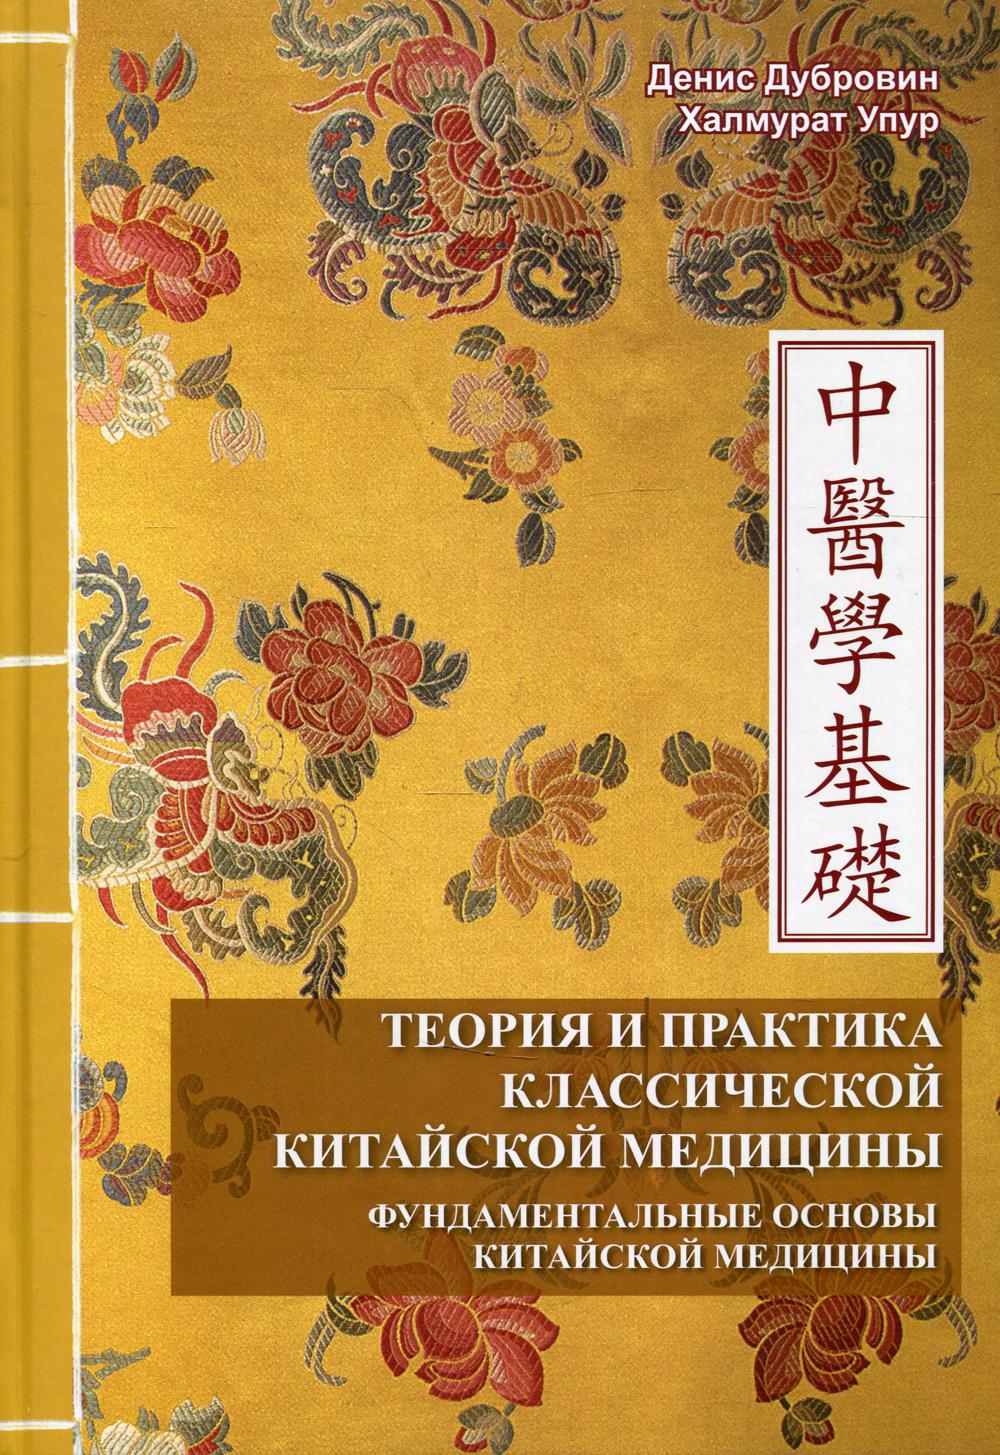 Теория и практика классической китайской медицины т.1